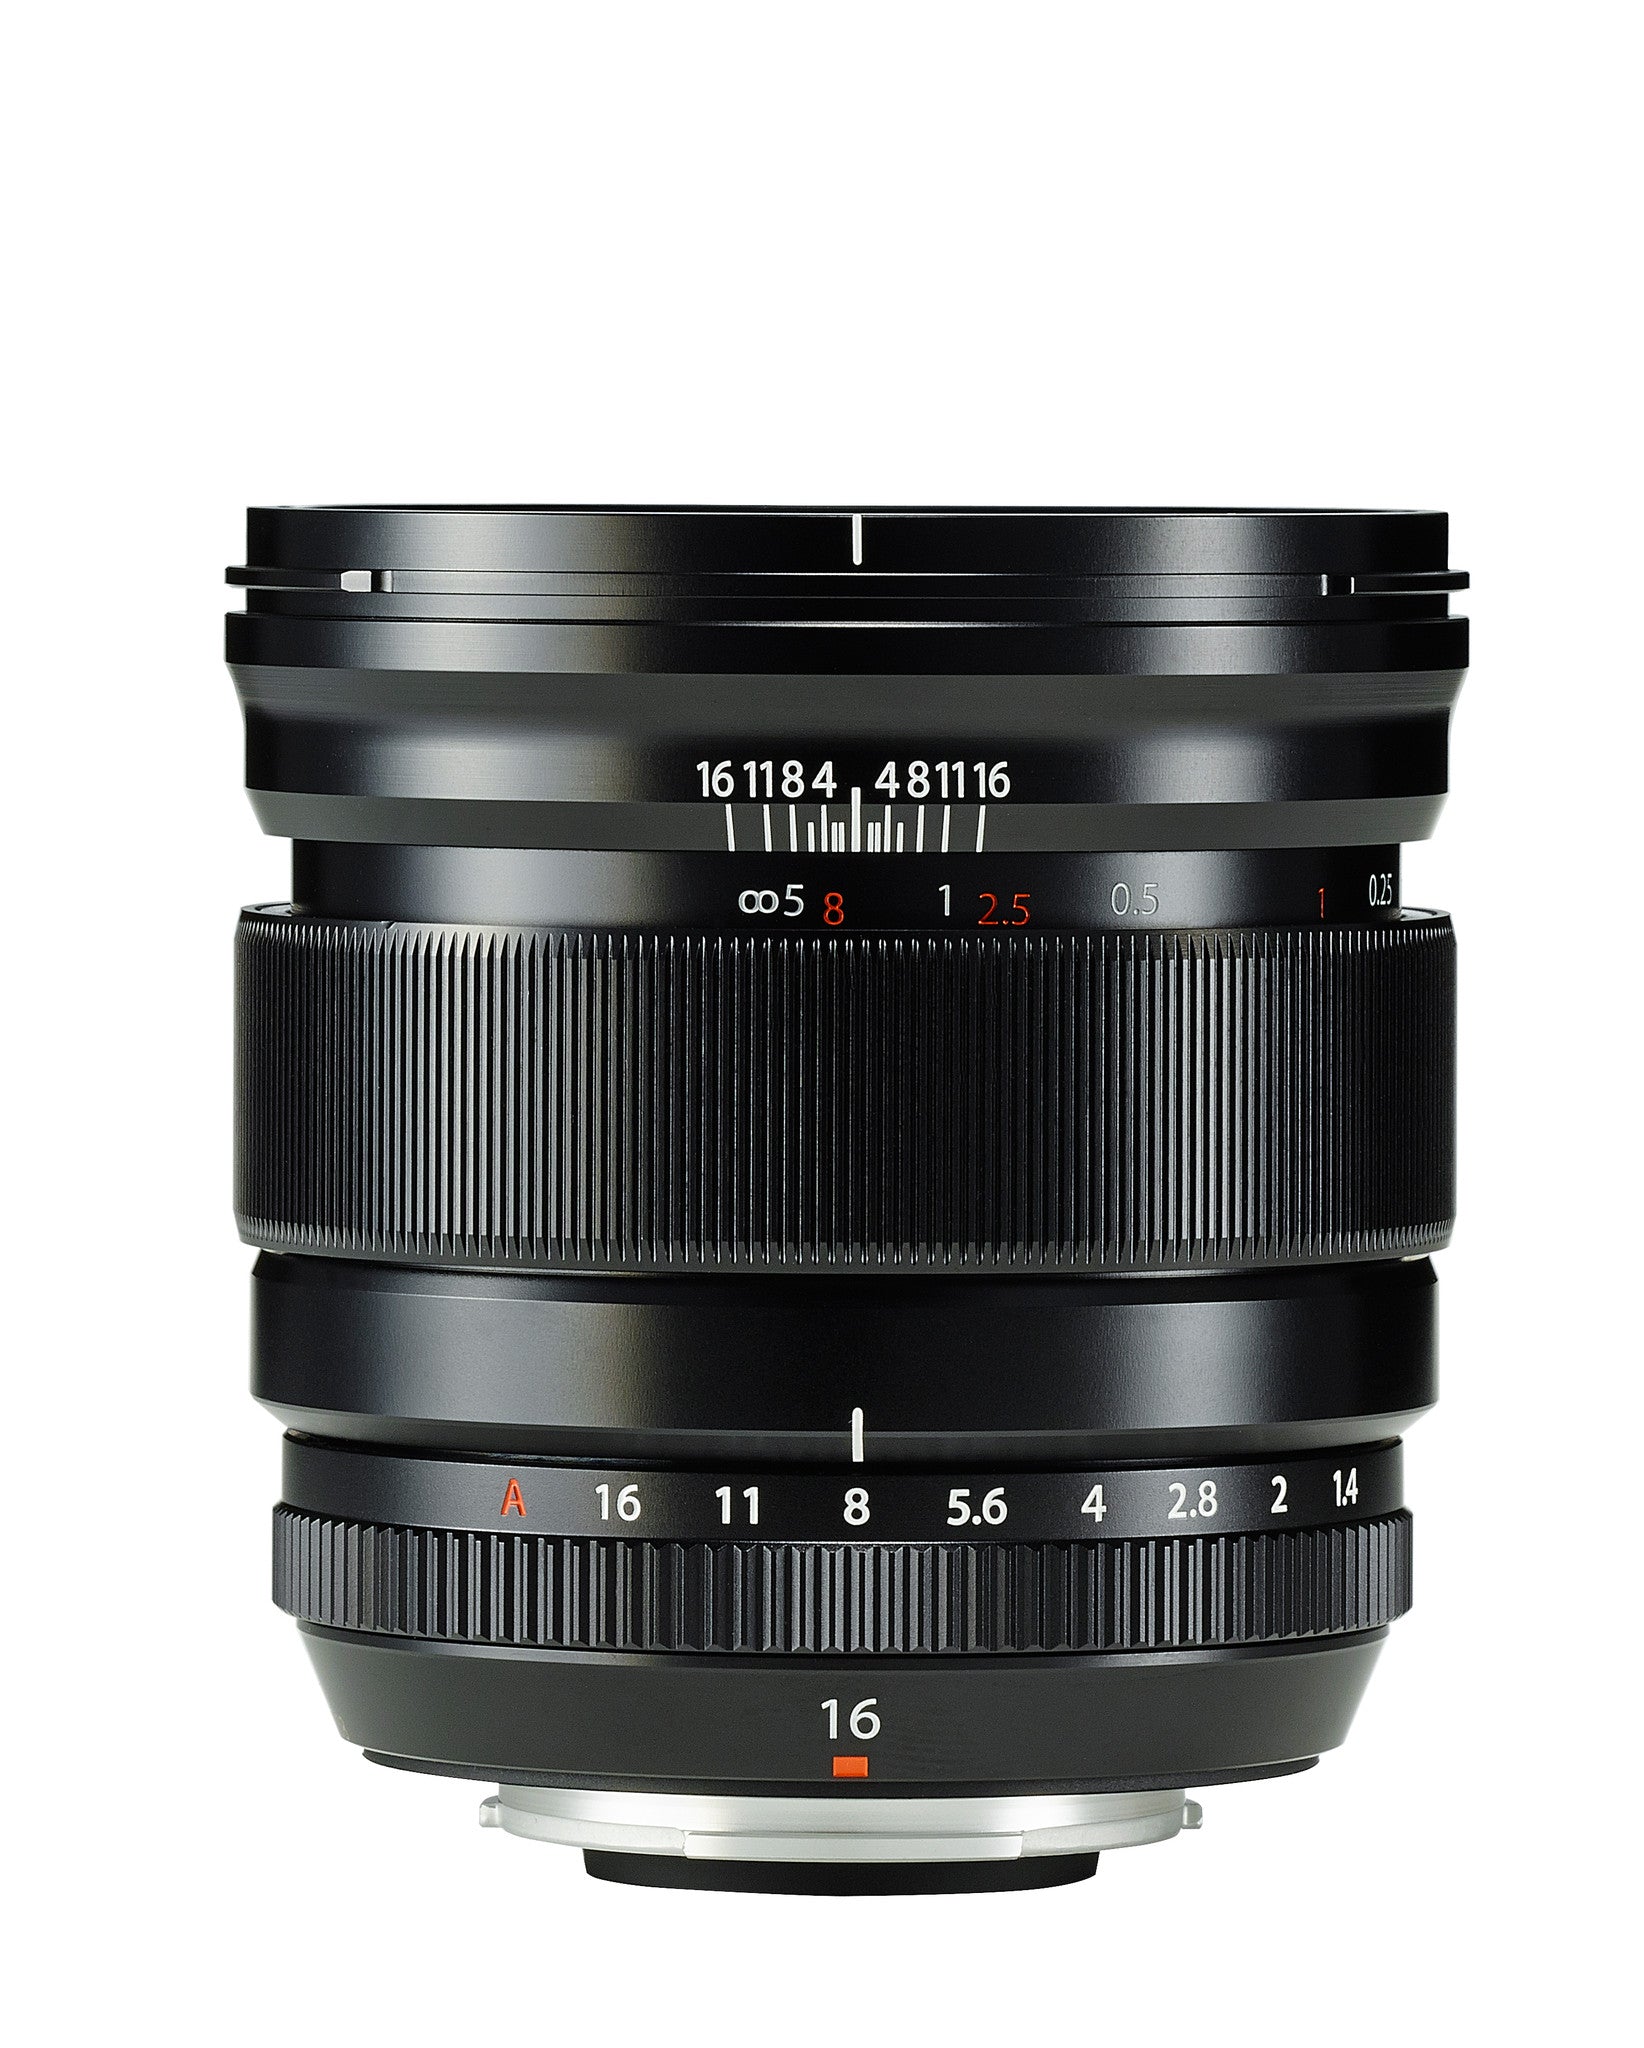 Fujifilm XF 16mm f1.4 Lens, lenses mirrorless, Fujifilm - Pictureline  - 2